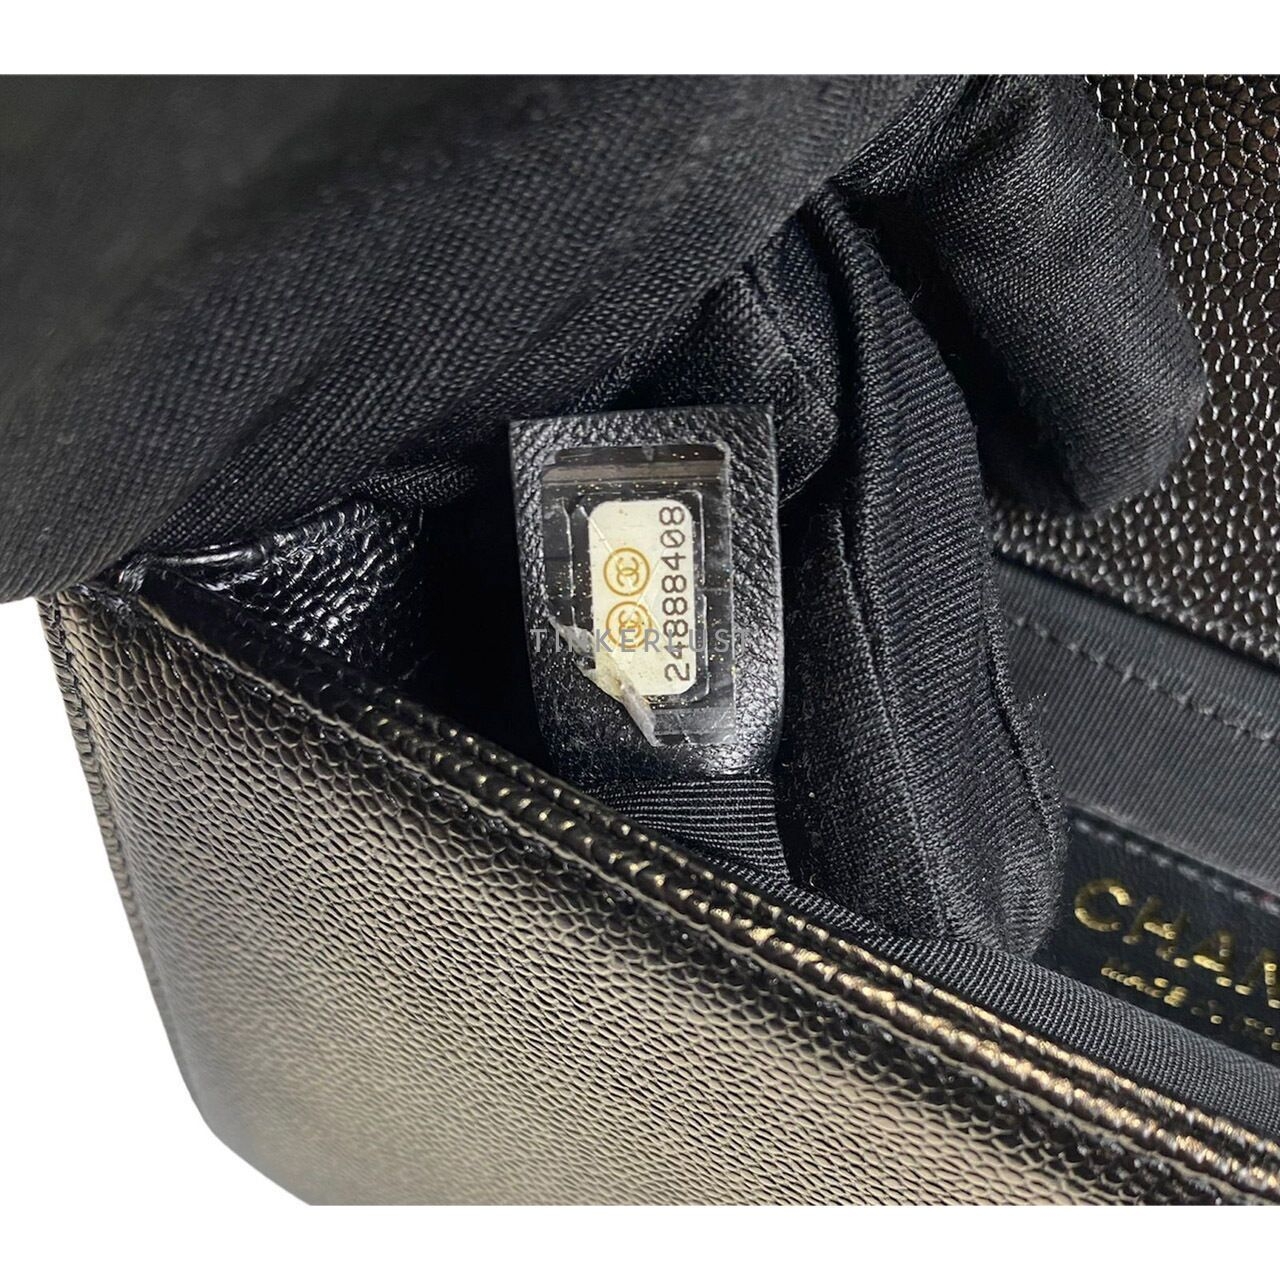 Chanel Boy Small Caviar Chevron Black GHW #24 Shoulder Bag